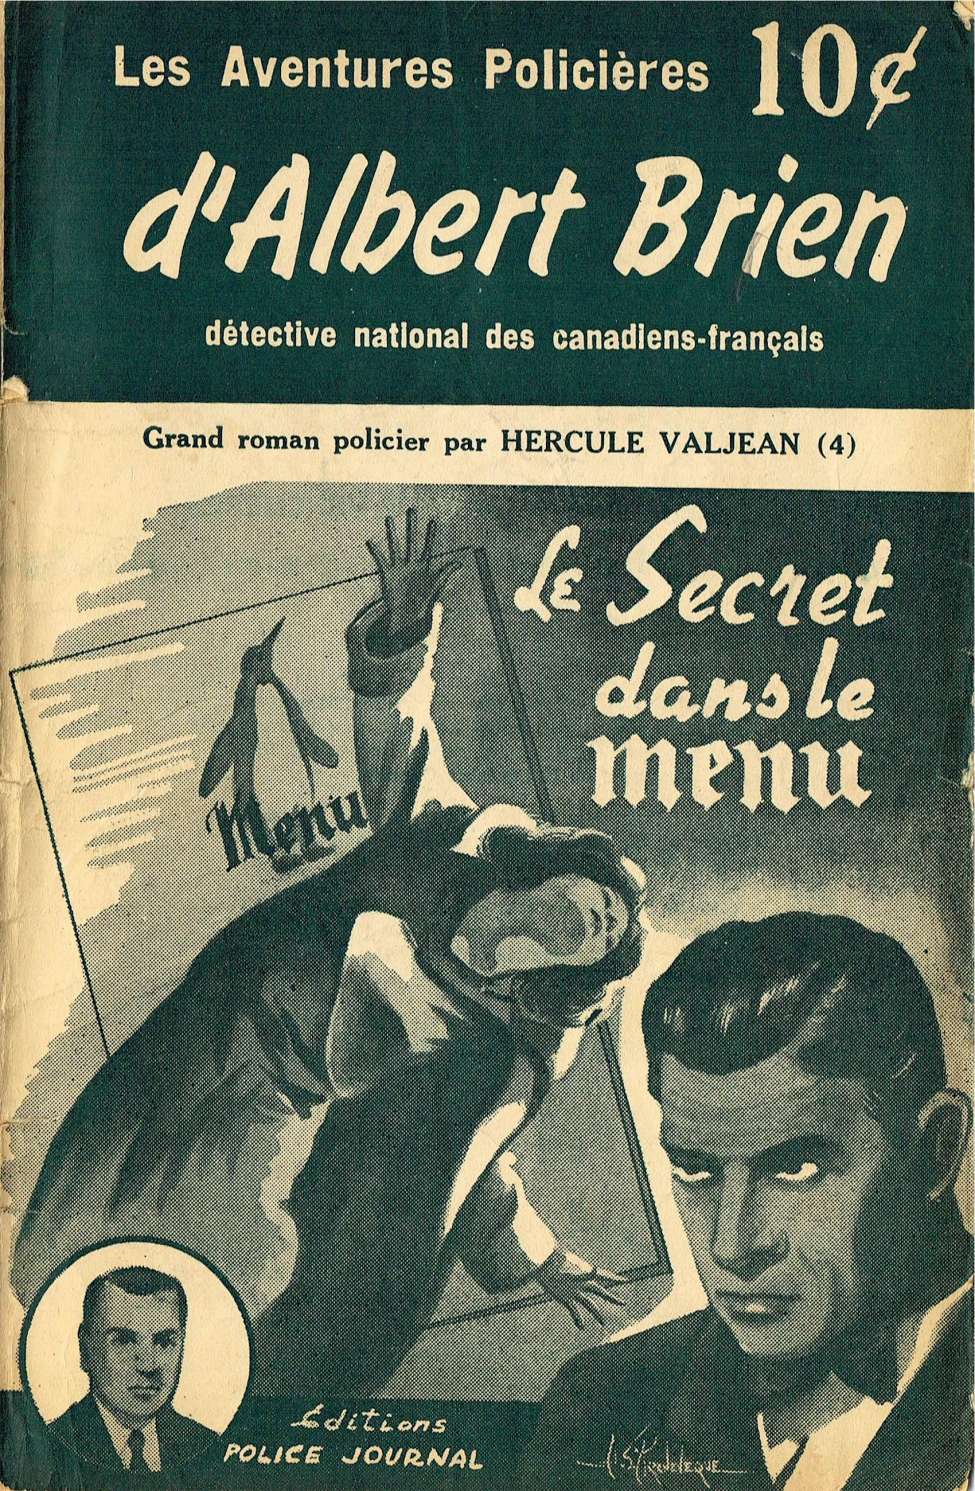 Book Cover For Albert Brien v2 4 - Le Secret dans le Menu